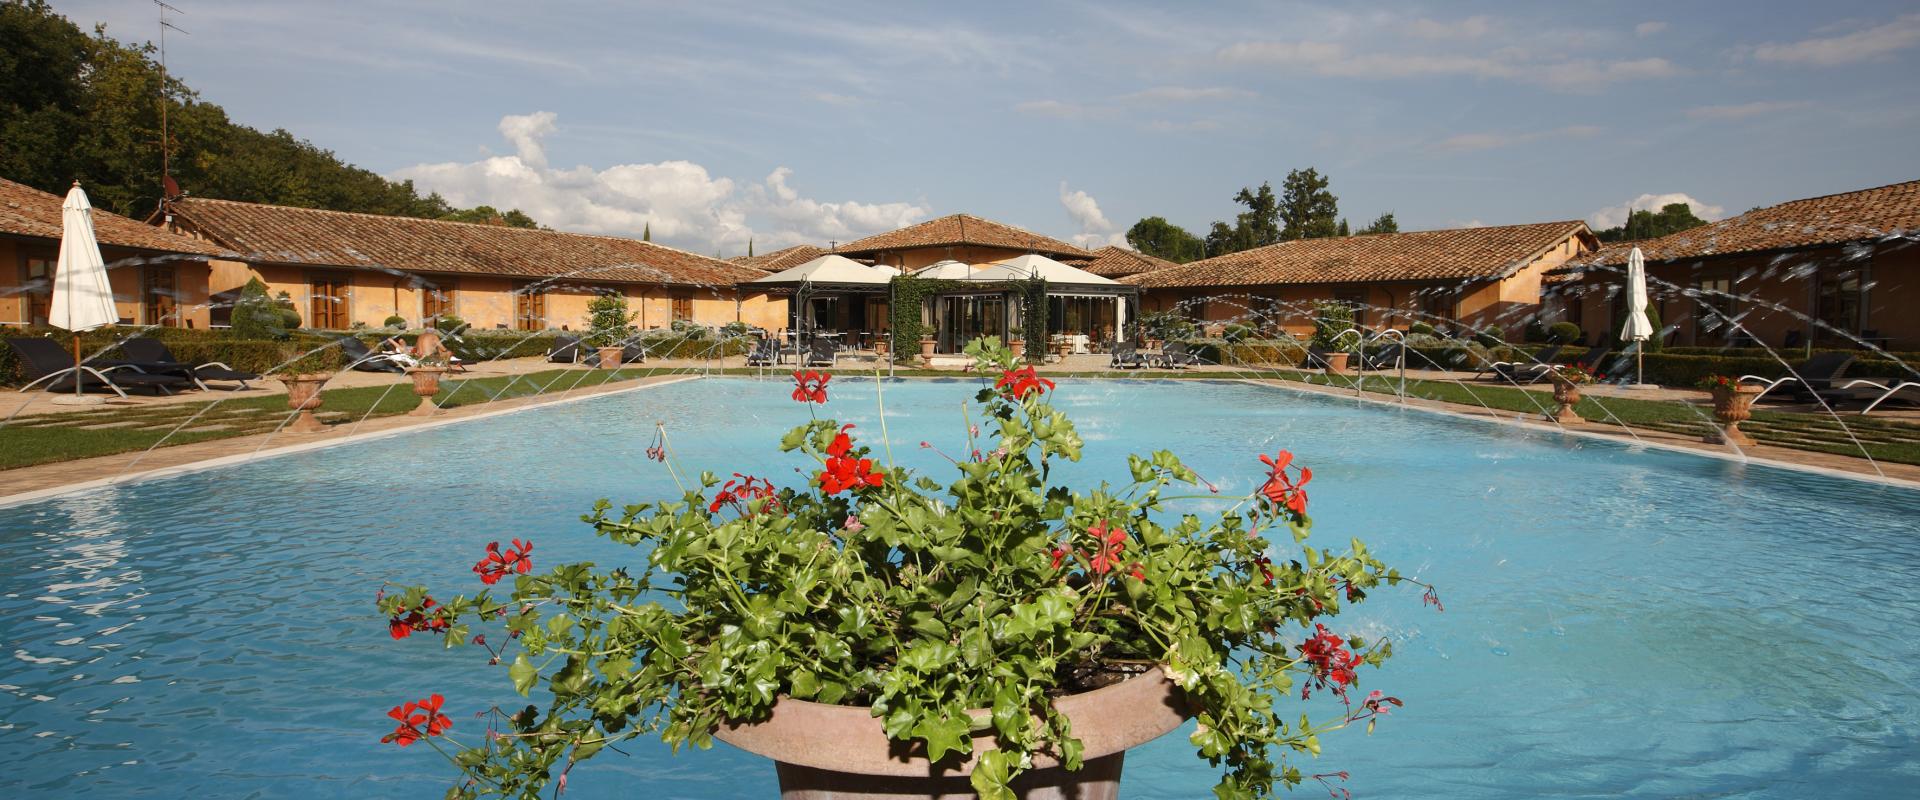 Hotel in Chianti area